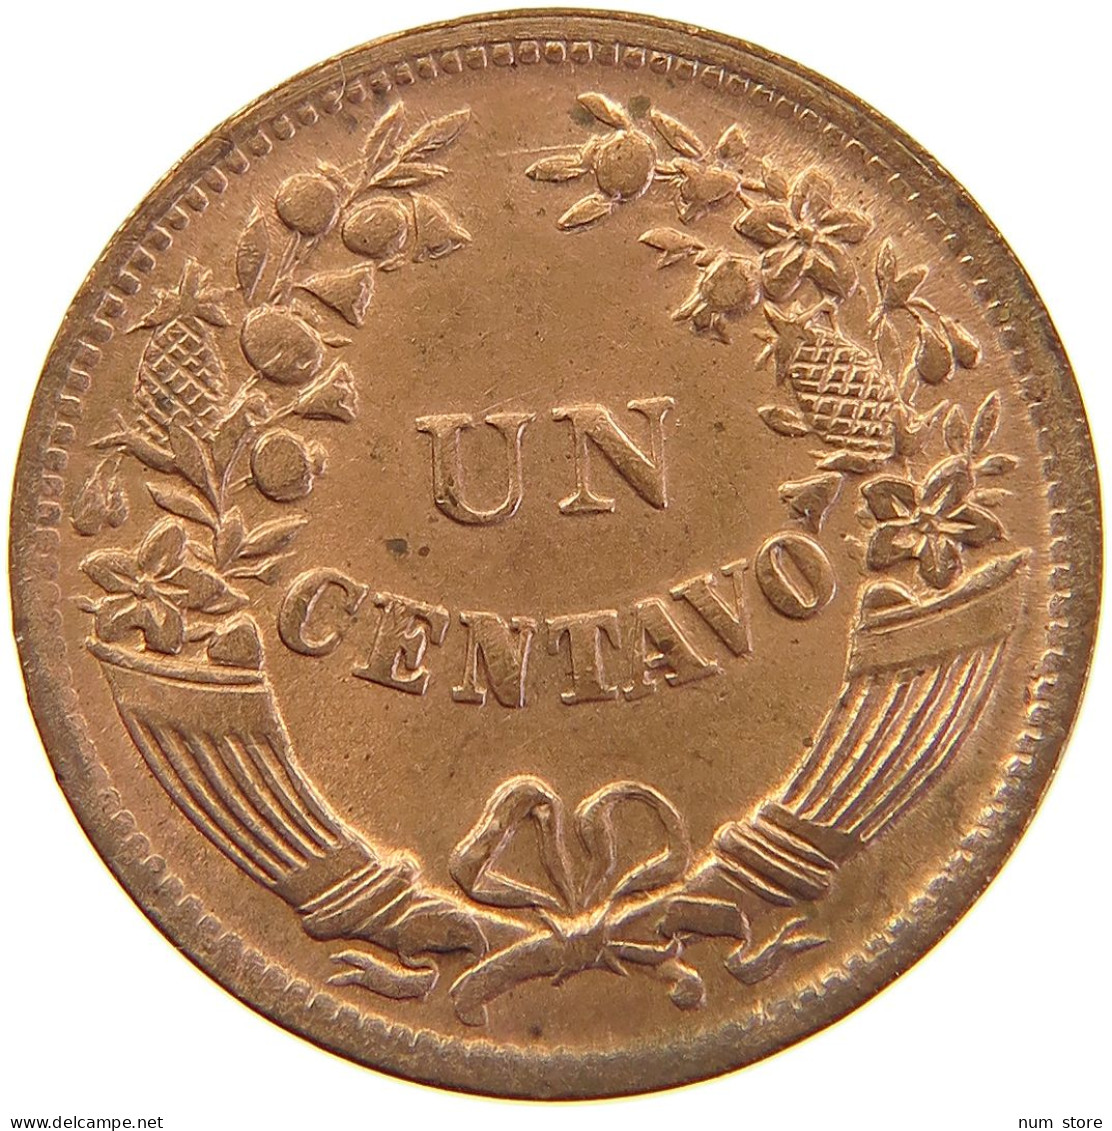 PERU CENTAVO 1948 UNC #t030 0243 - Peru